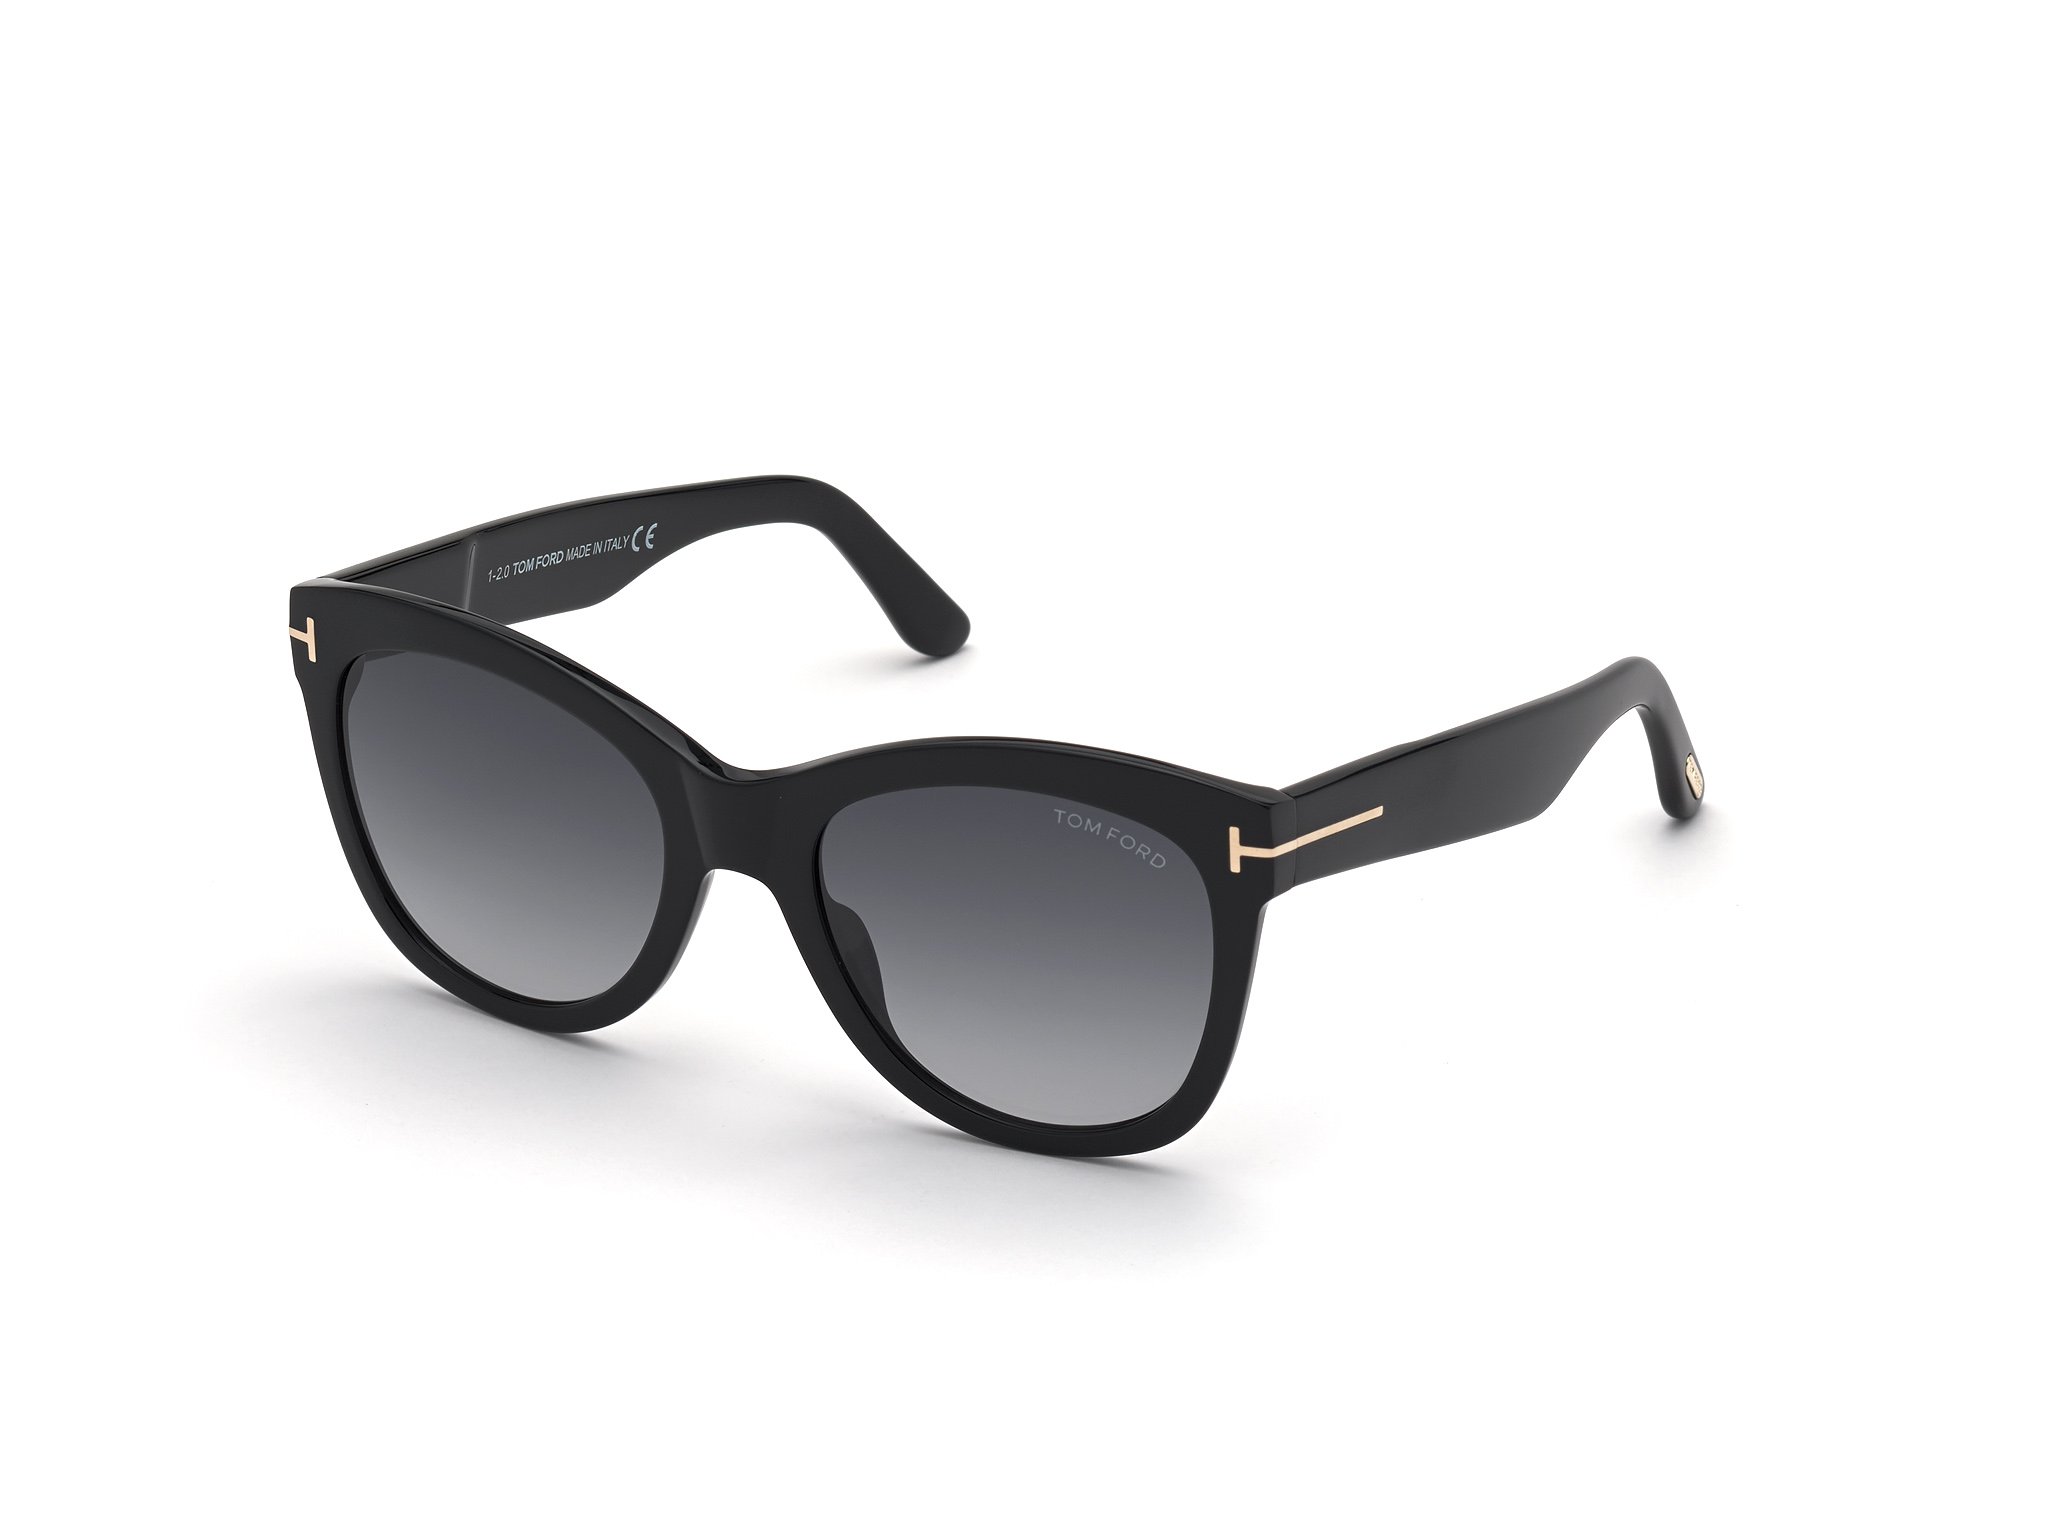 Das Bild zeigt die Sonnenbrille Sabrina FT0870 von der Marke Tom Ford in schwarz